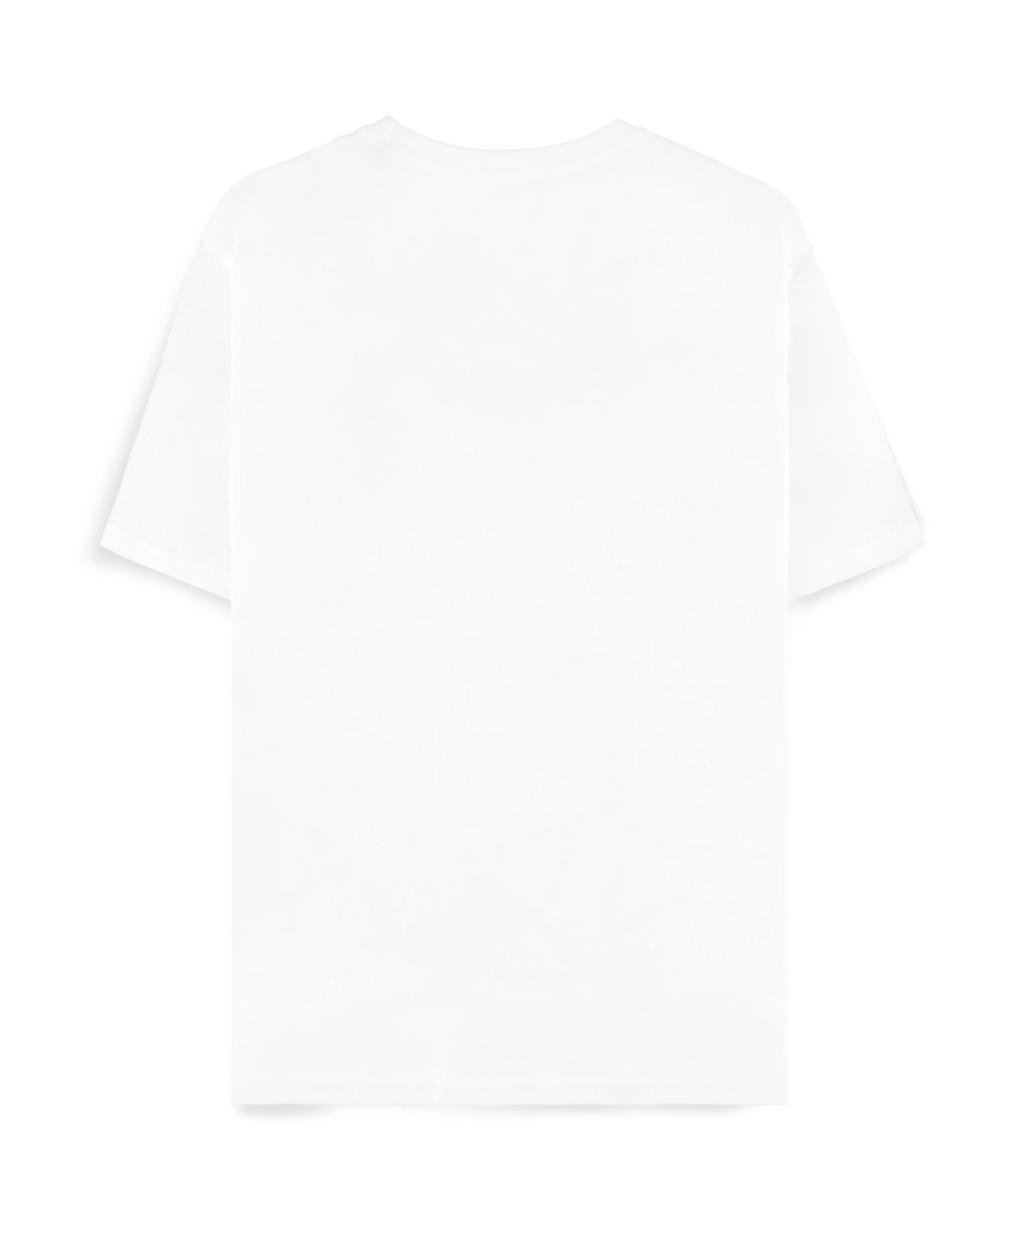 NARUTO Shippuden - Sasuke Symbol - Women's T-shirt (M)